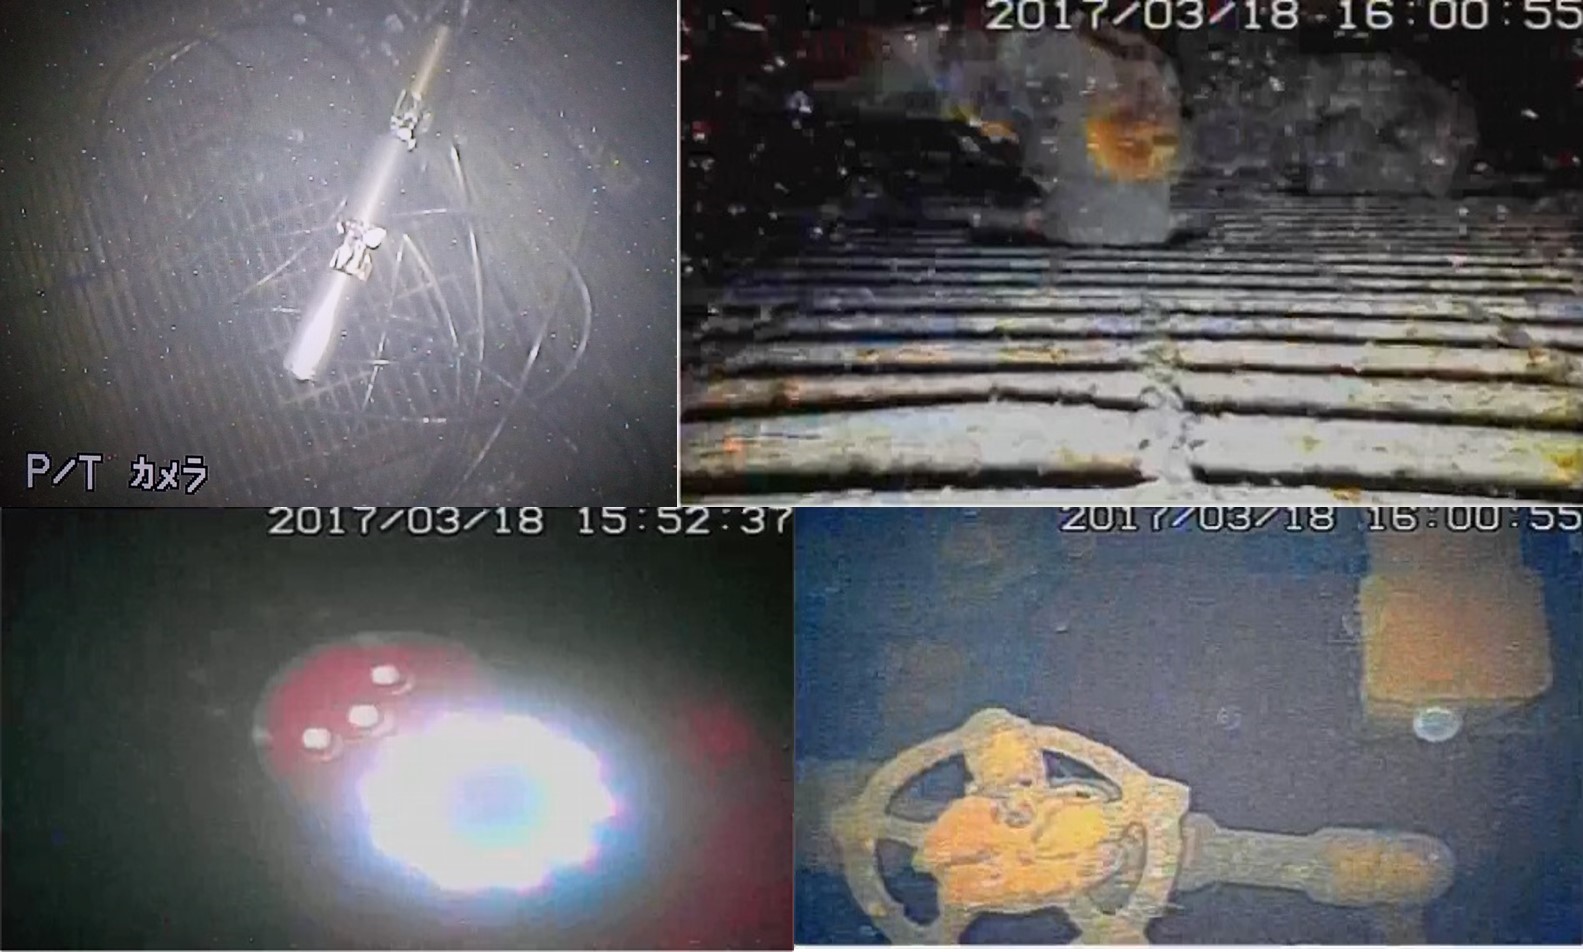 Záběry z průzkumu prvního bloku v březnu 2017. Vlevo nahoře je pohled na robota, který se právě dostal z potrubí do kontejnmentu. Napřed se podíval na roštovou podlahu, dole vlevo je záběr pořízený těsně předtím, než se sonda vnořila do vody. Vpravo 